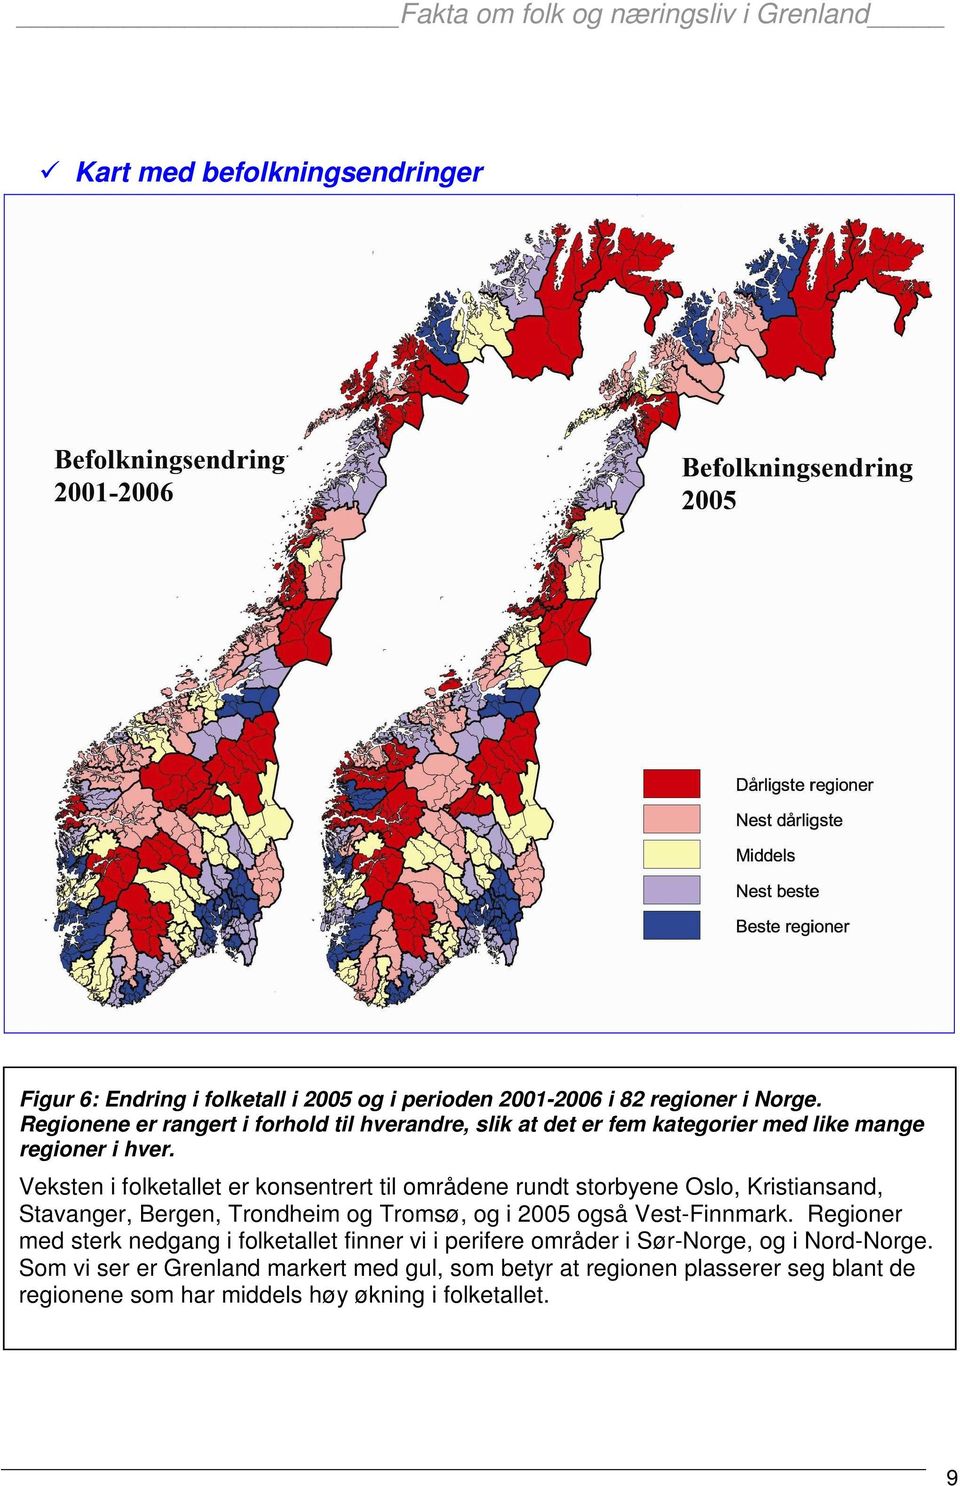 Veksten i folketallet er konsentrert til områdene rundt storbyene Oslo, Kristiansand, Stavanger, Bergen, Trondheim og Tromsø, og i 2005 også